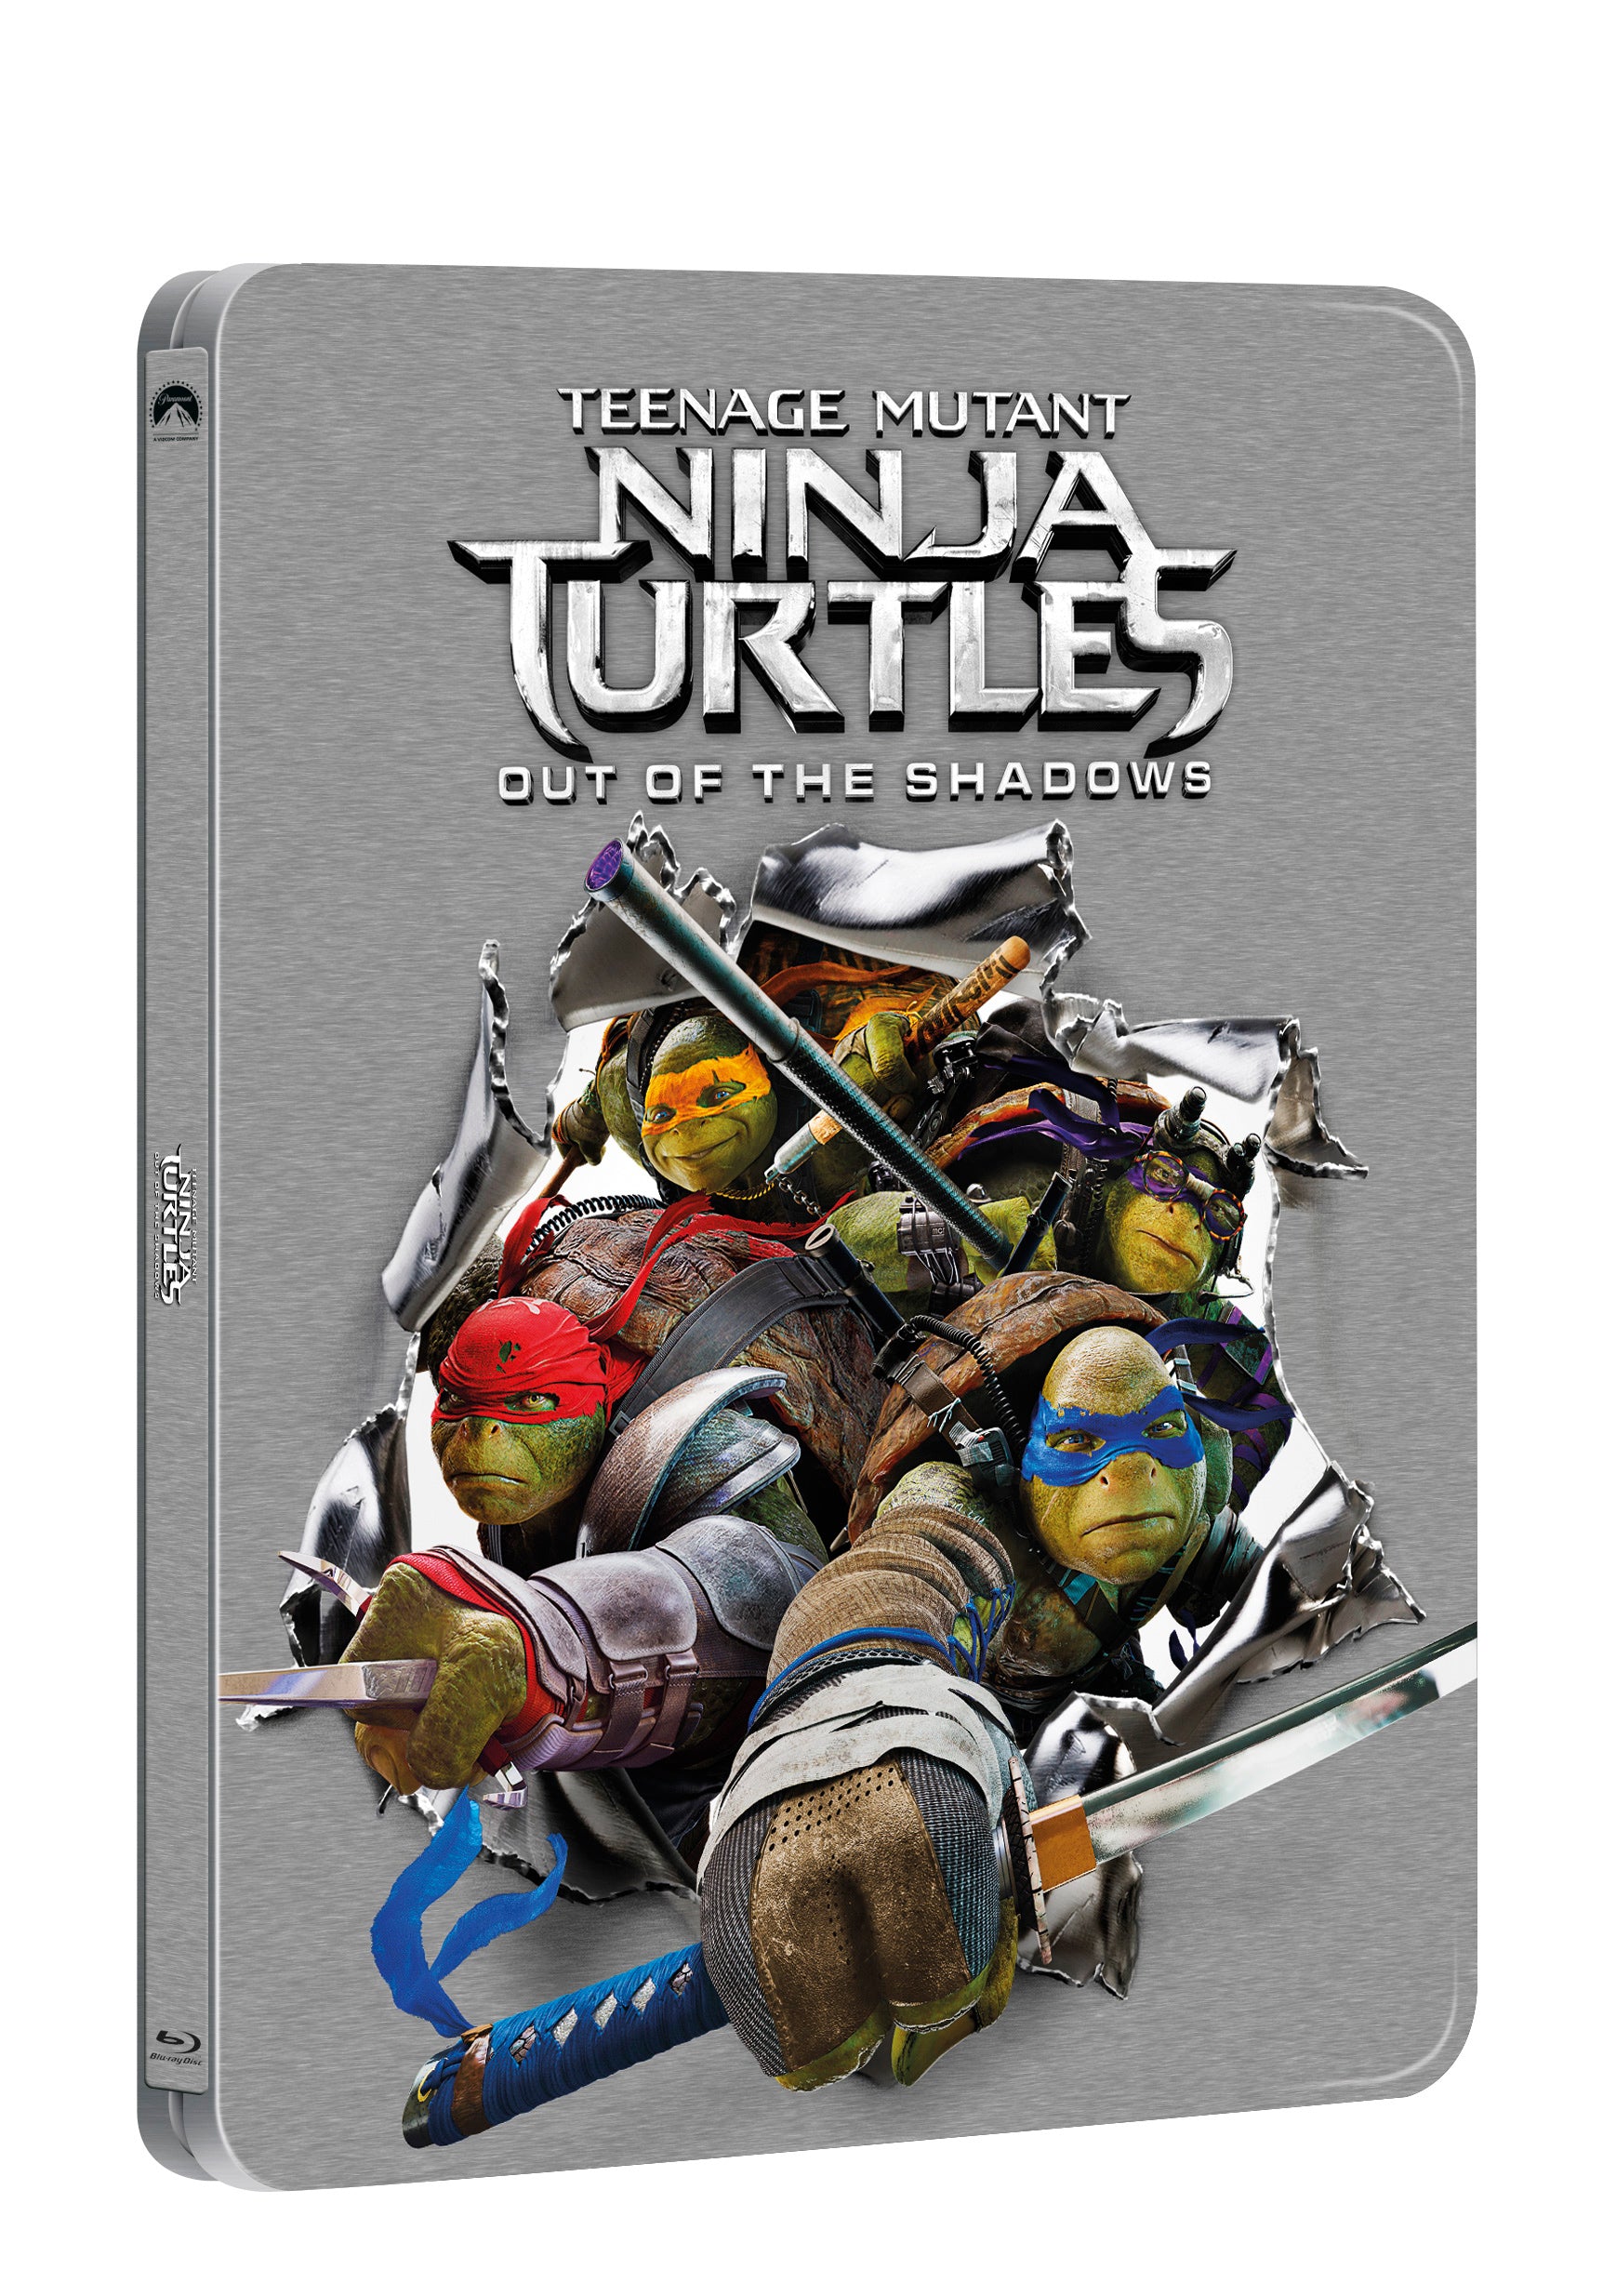 Zelvy Ninja 2 (2Blu-ray 3D+2D) - steelbook (Teenage Mutant Ninja Turtles: Out Of The Shadows - steelbook)